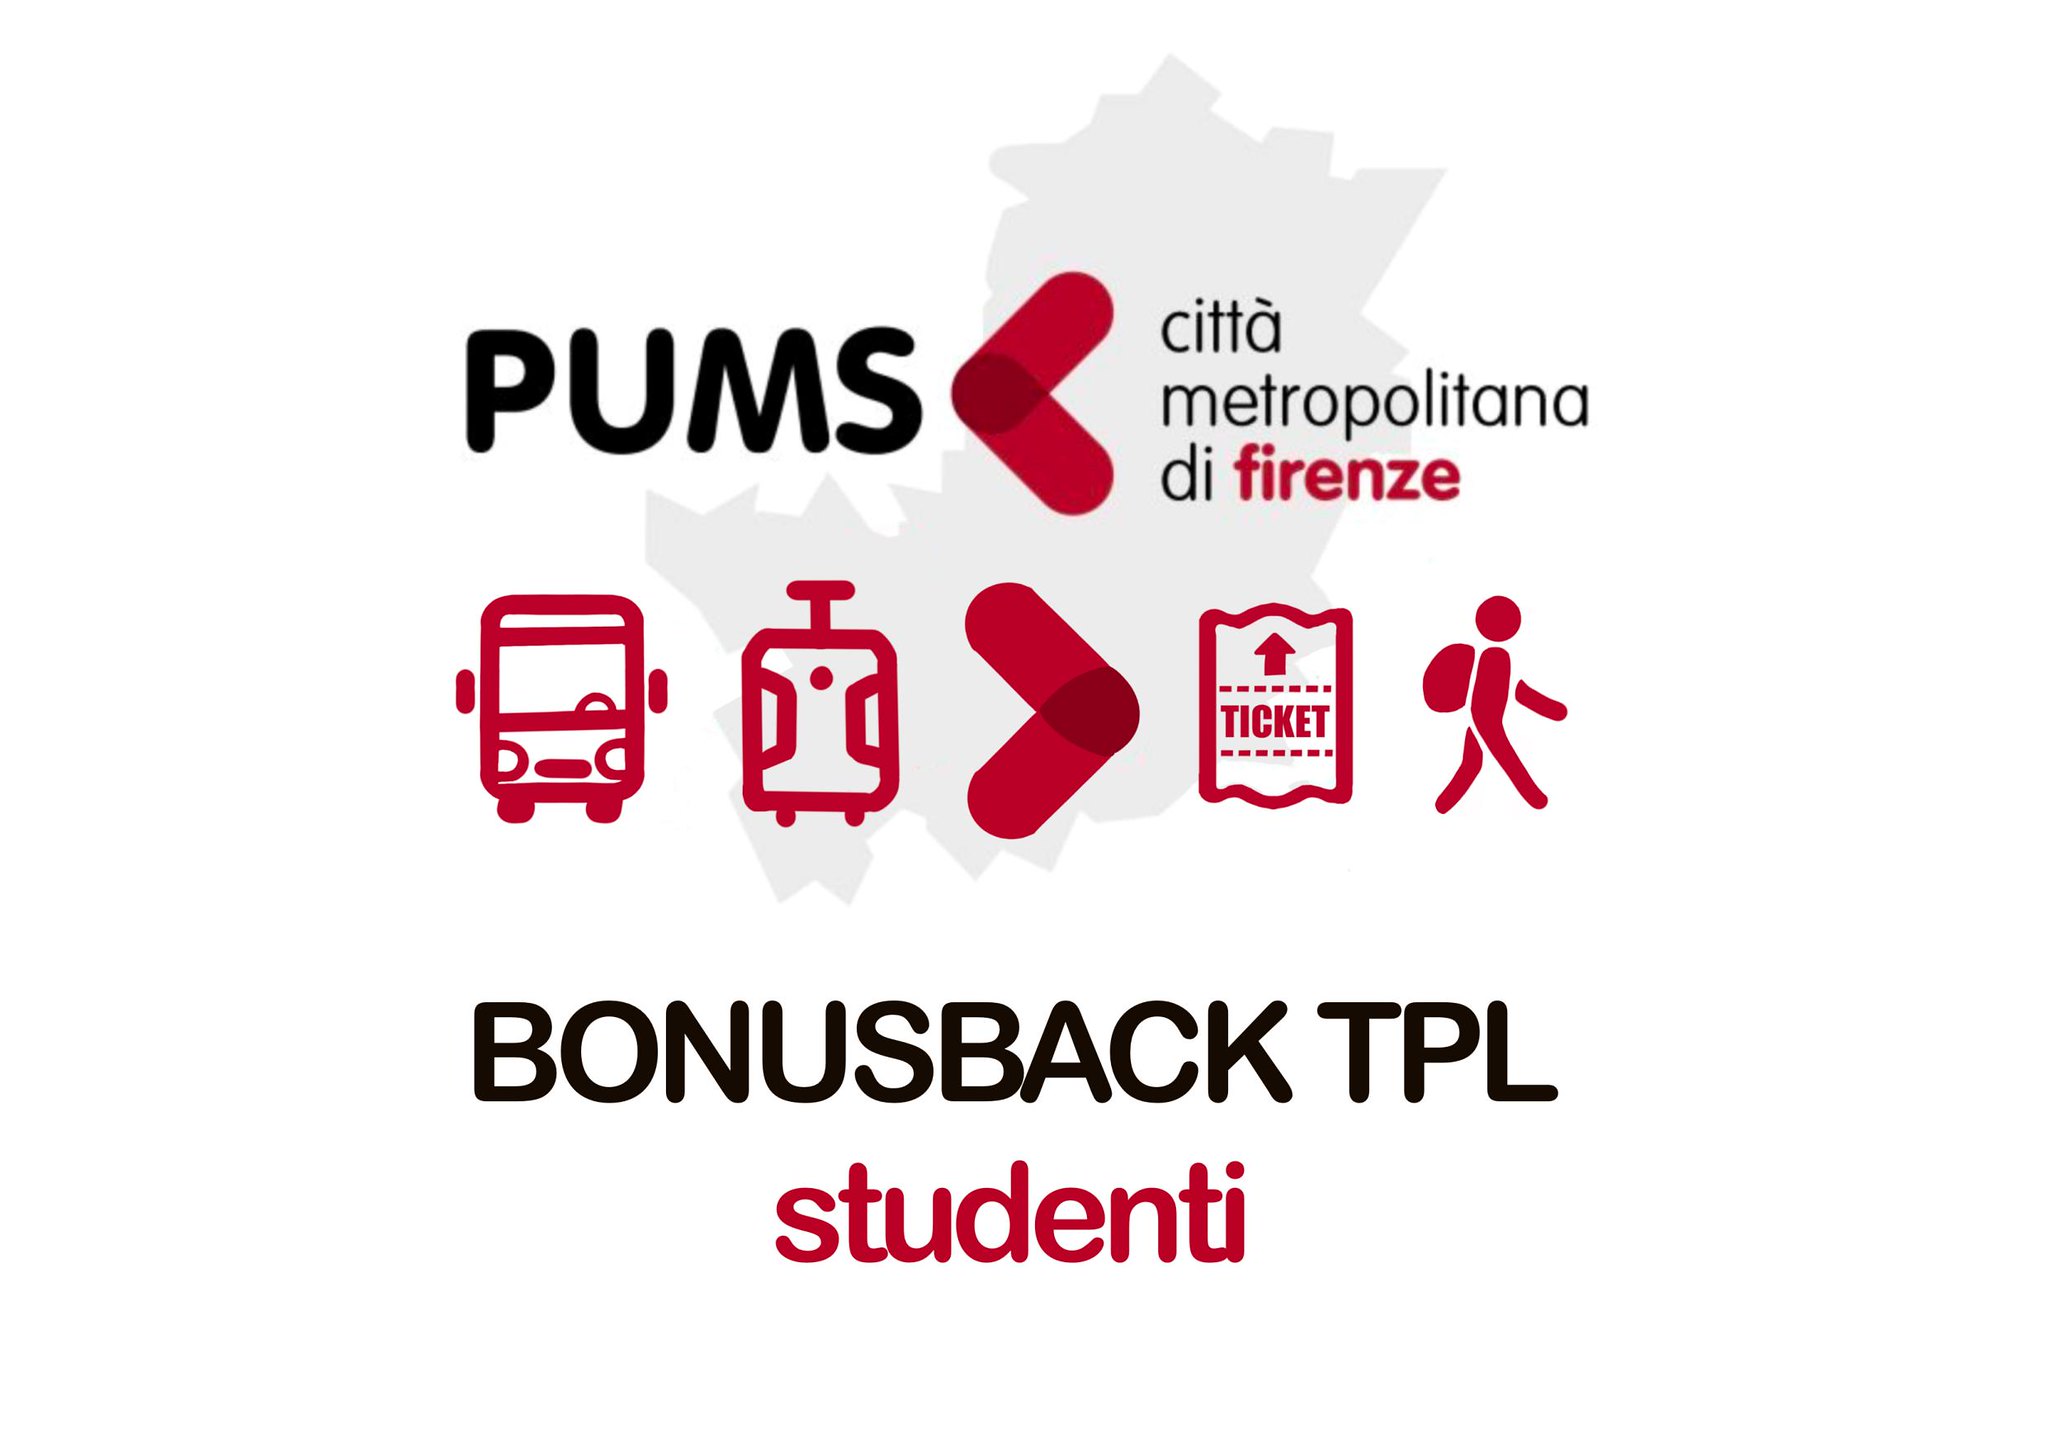 BonusBack per gli studenti delle scuole superiori che utilizzano il trasporto pubblico